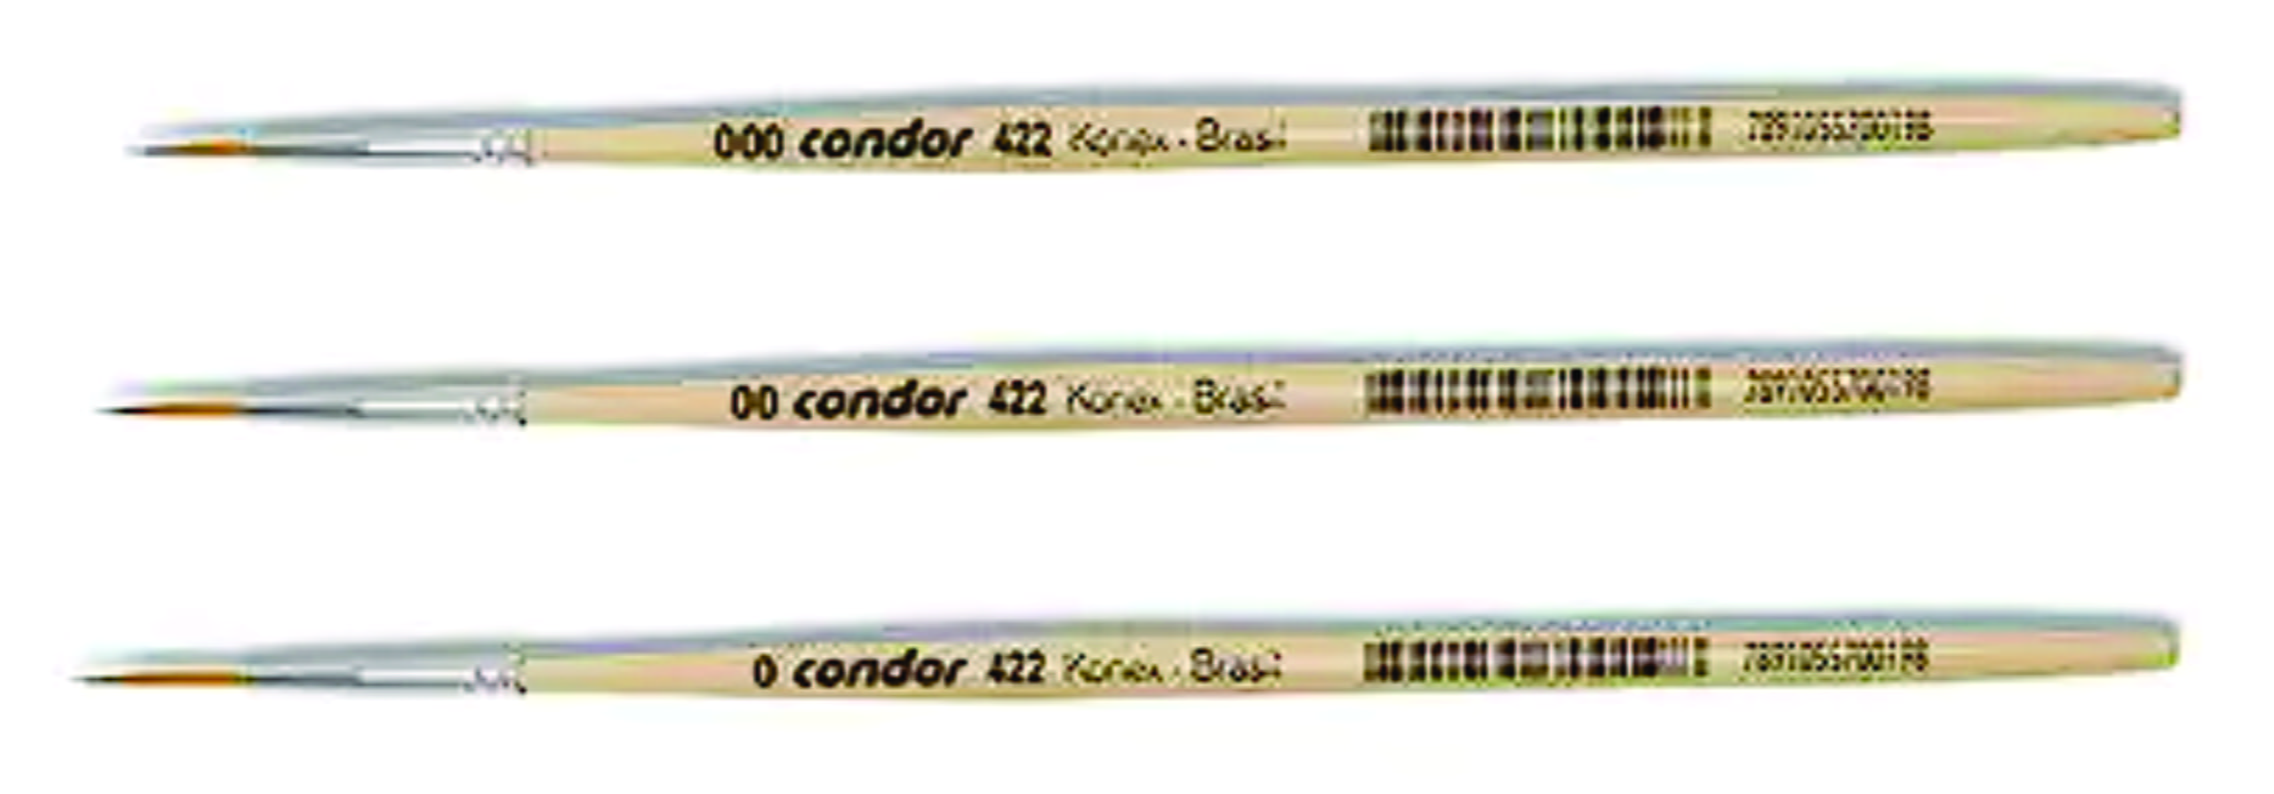 Pincel Condor Ref. 422 - Filete Liner Sintético 